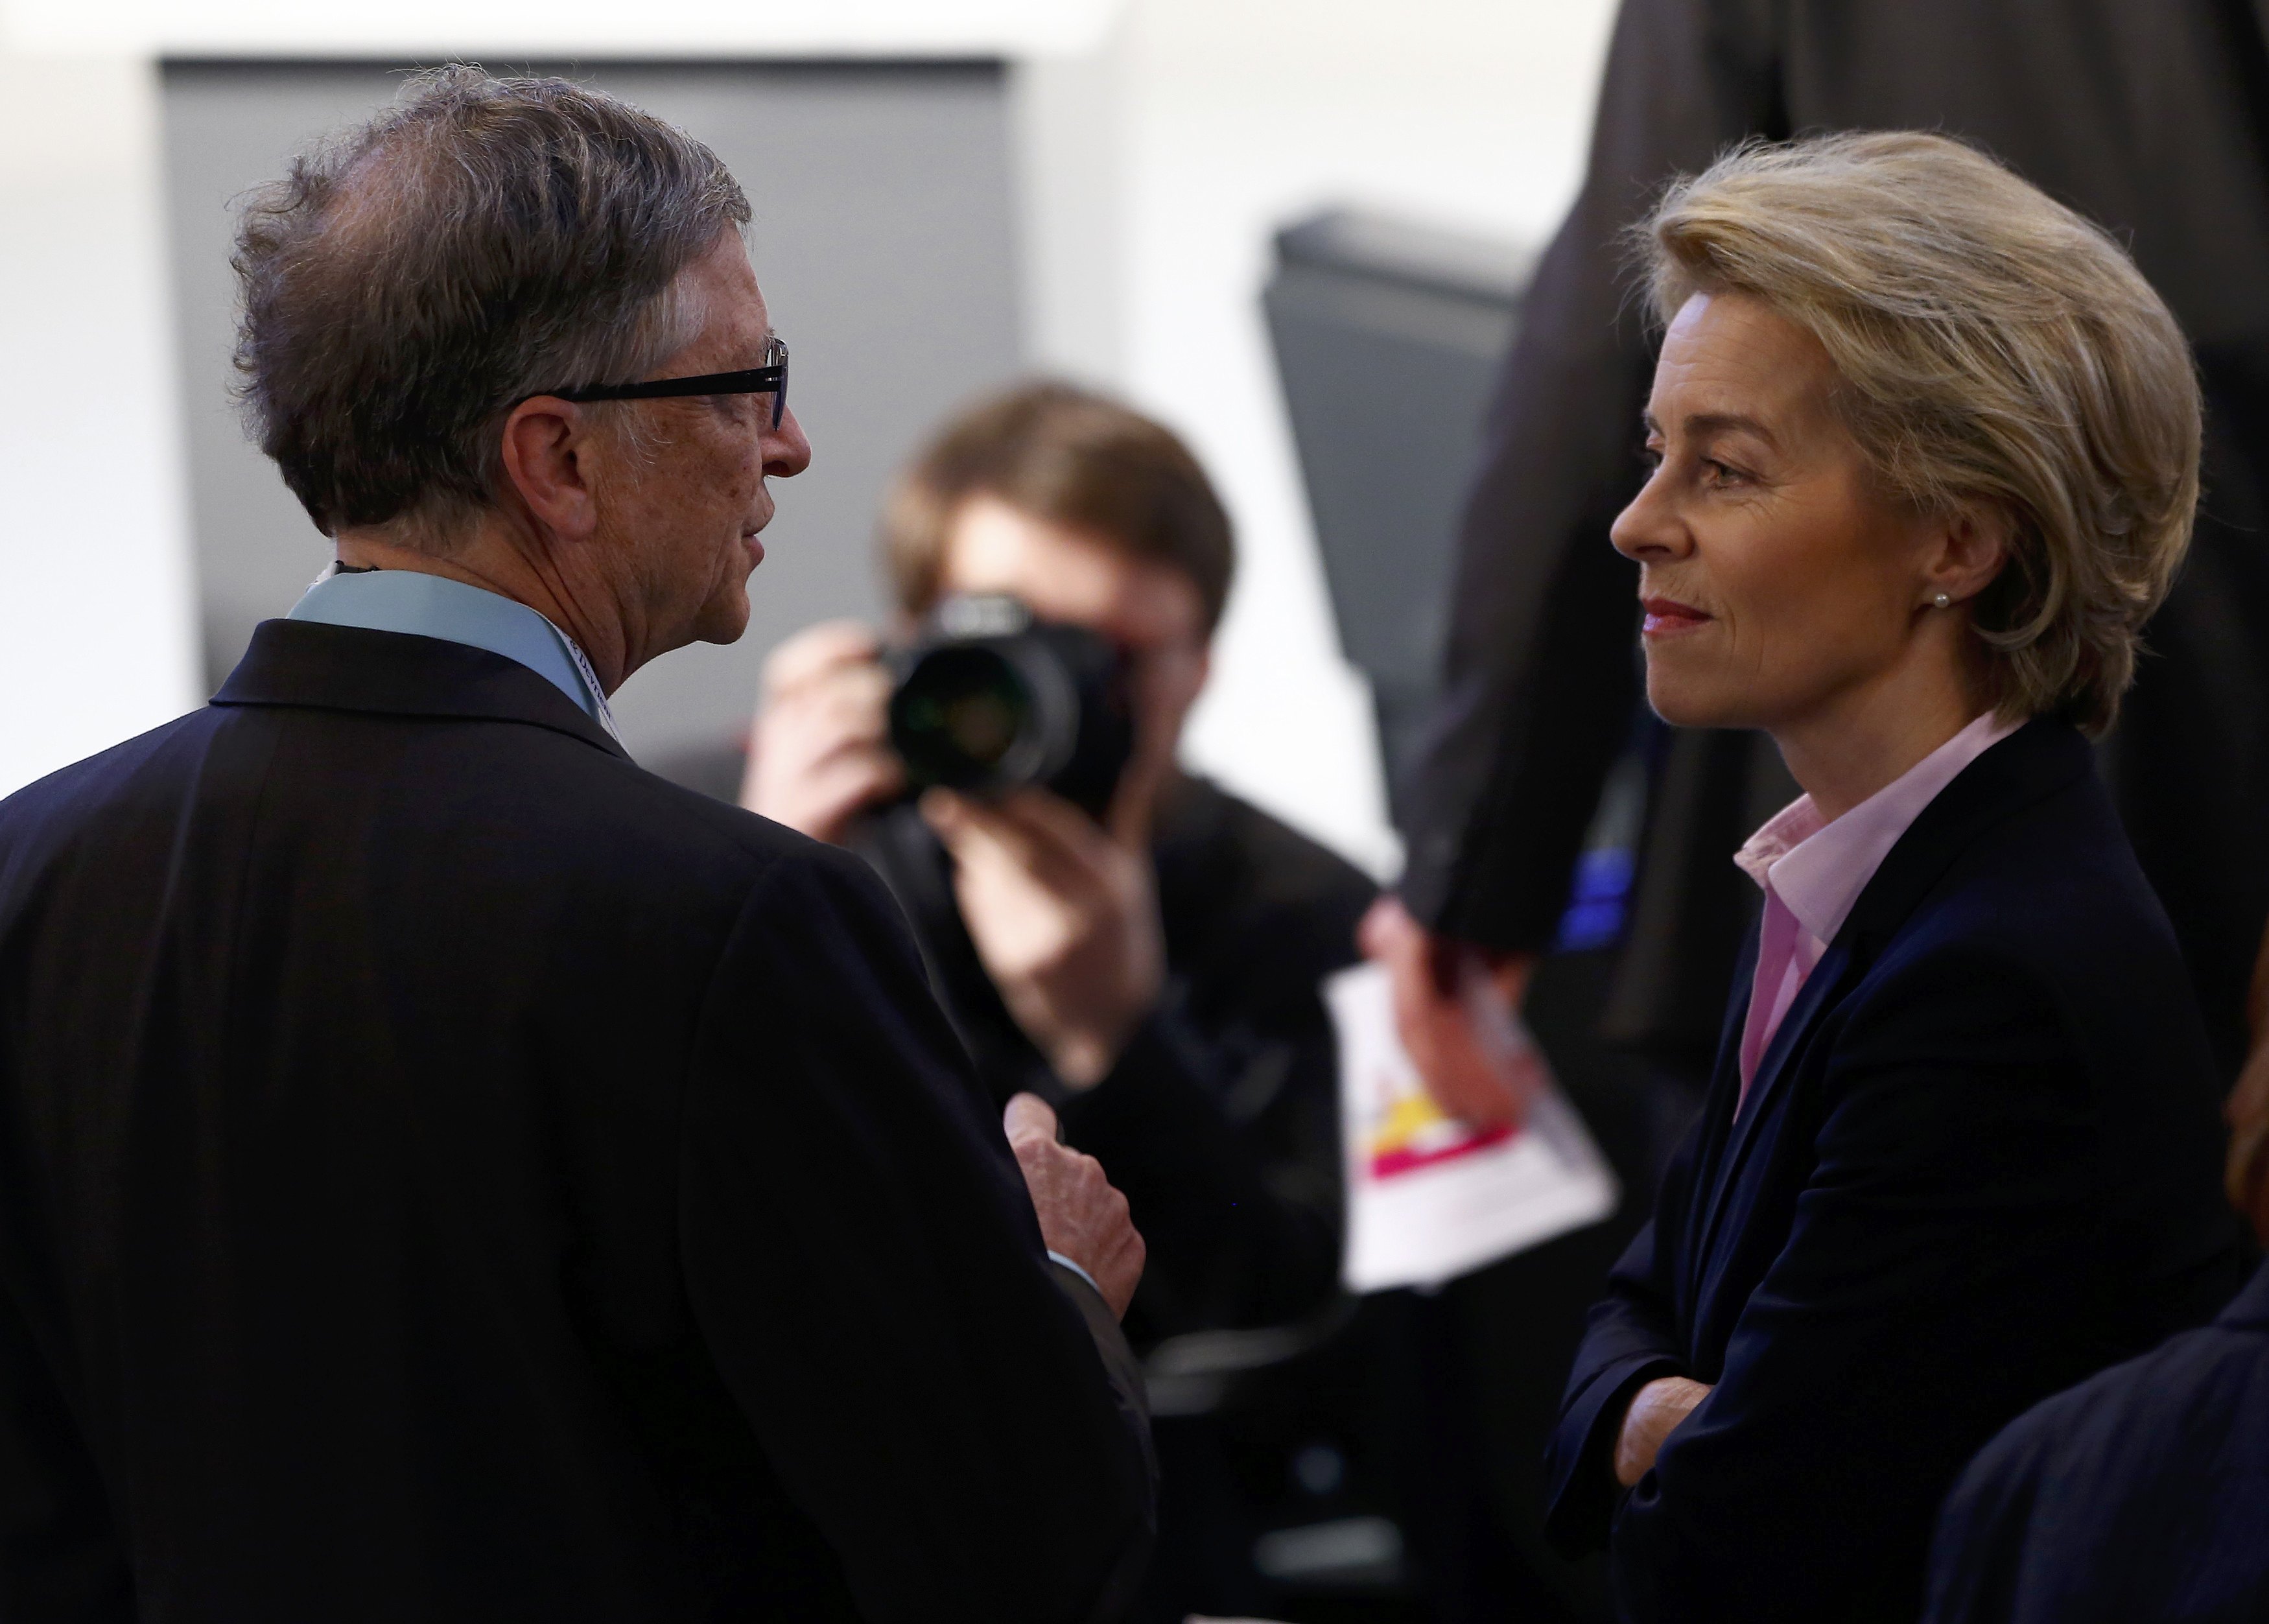 وزيرة الدفاع الألمانى أورسولا فون دير ليان تتحدث مع بيل جيتس فى مؤتمر ميونخ للأمن